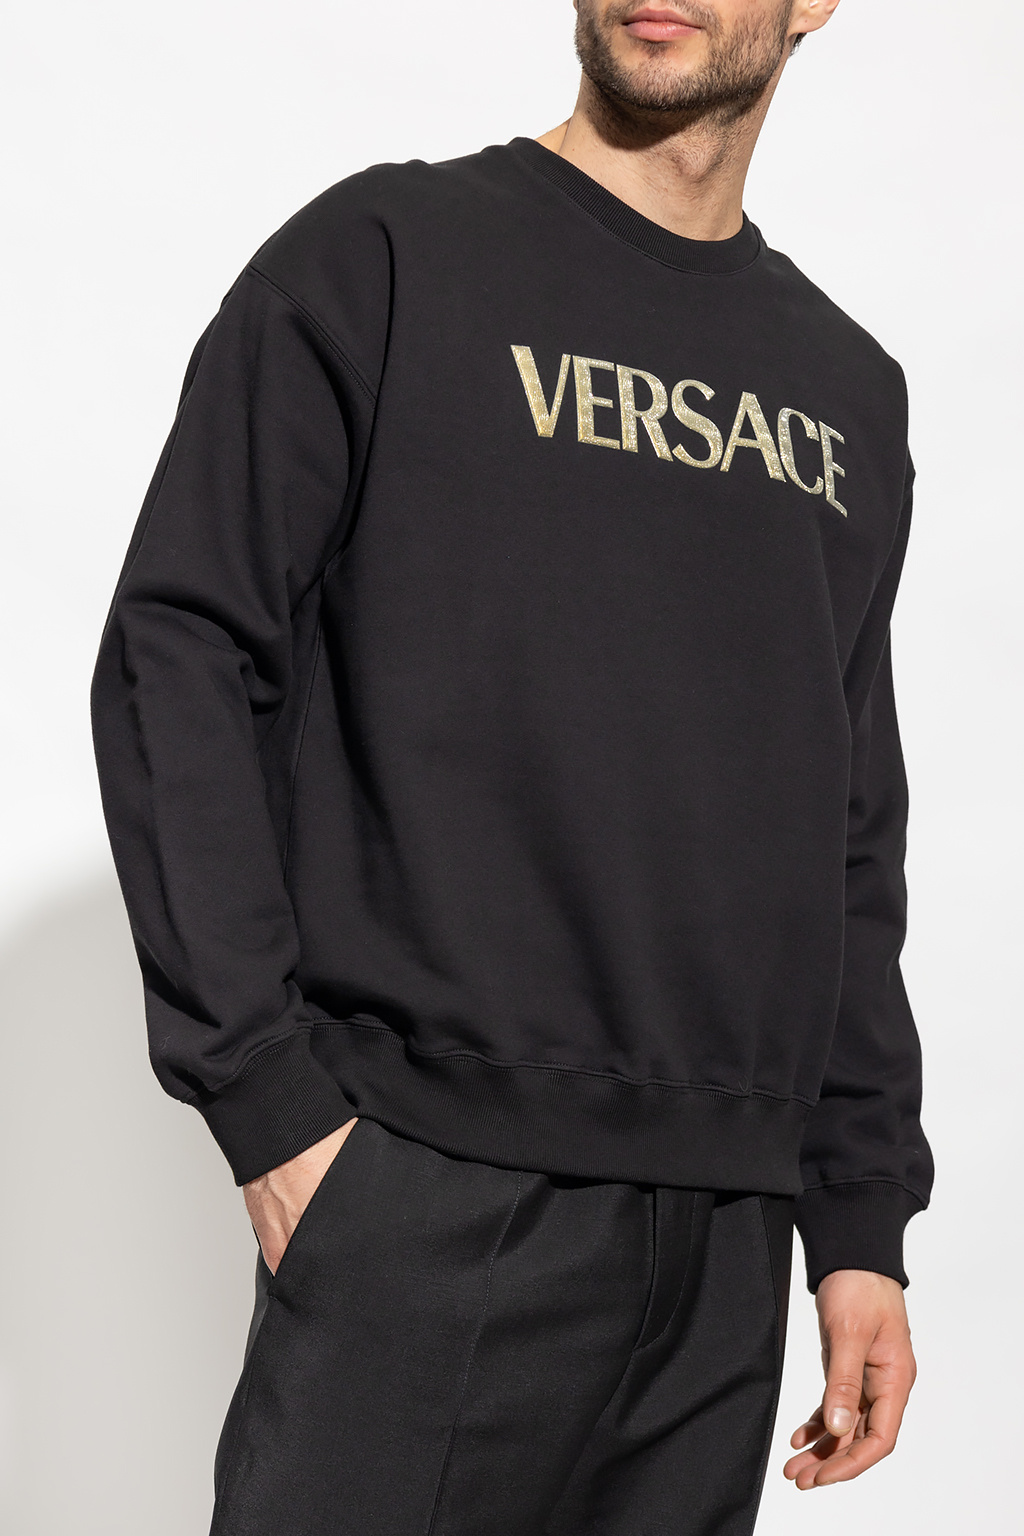 Versace Tolles Shirt tolles Material